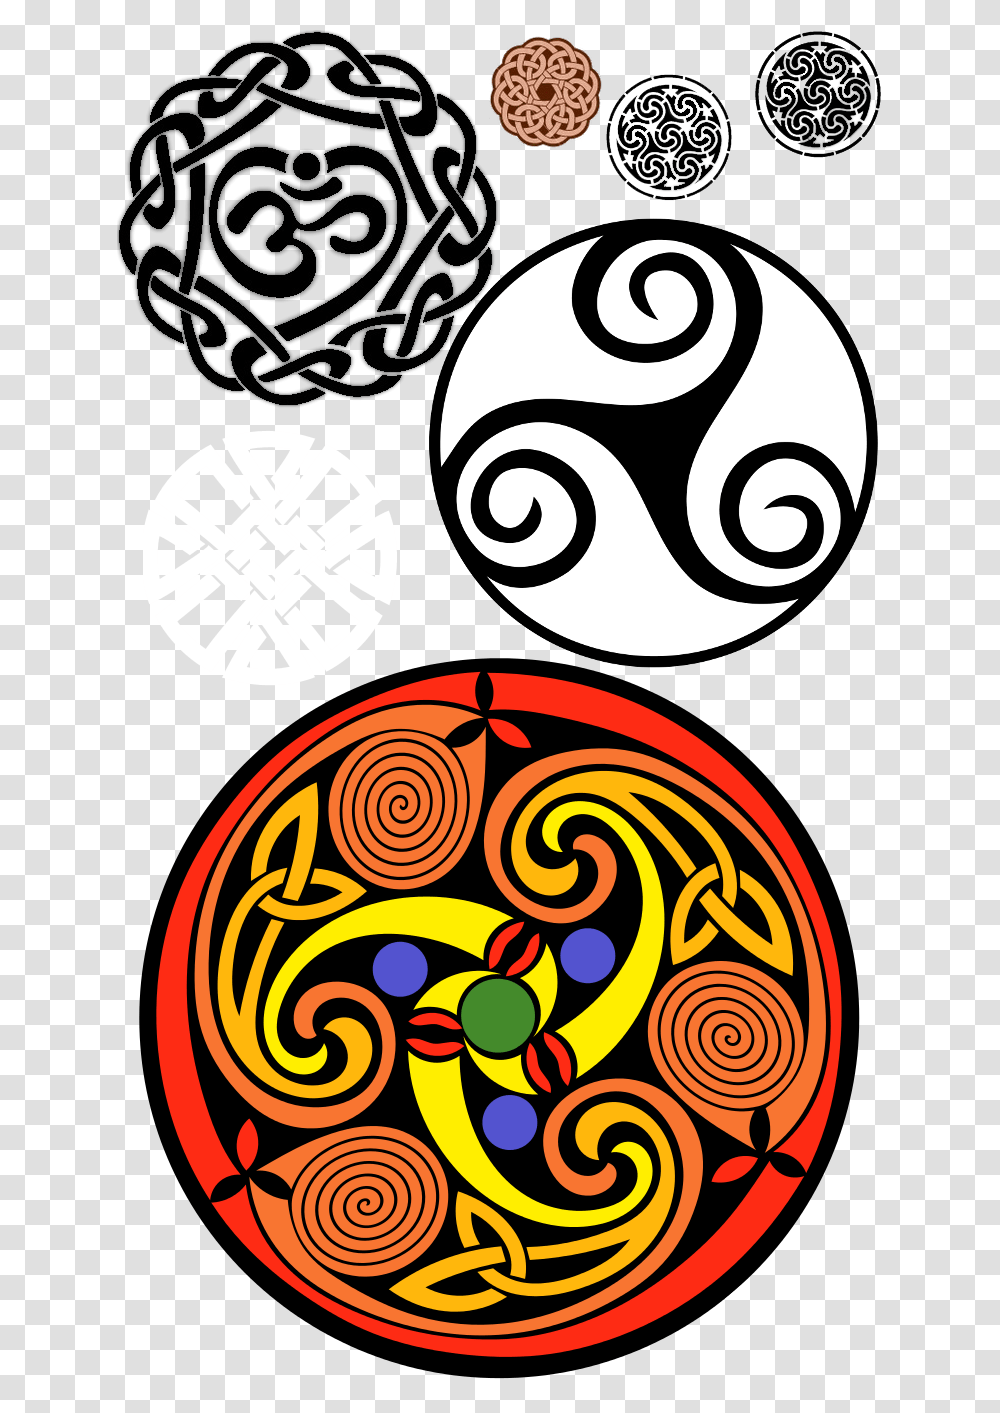 Celtic Celtic Symbols Celtic Knots Celtic Knot Triskele Triple Spiral, Pattern, Floral Design Transparent Png